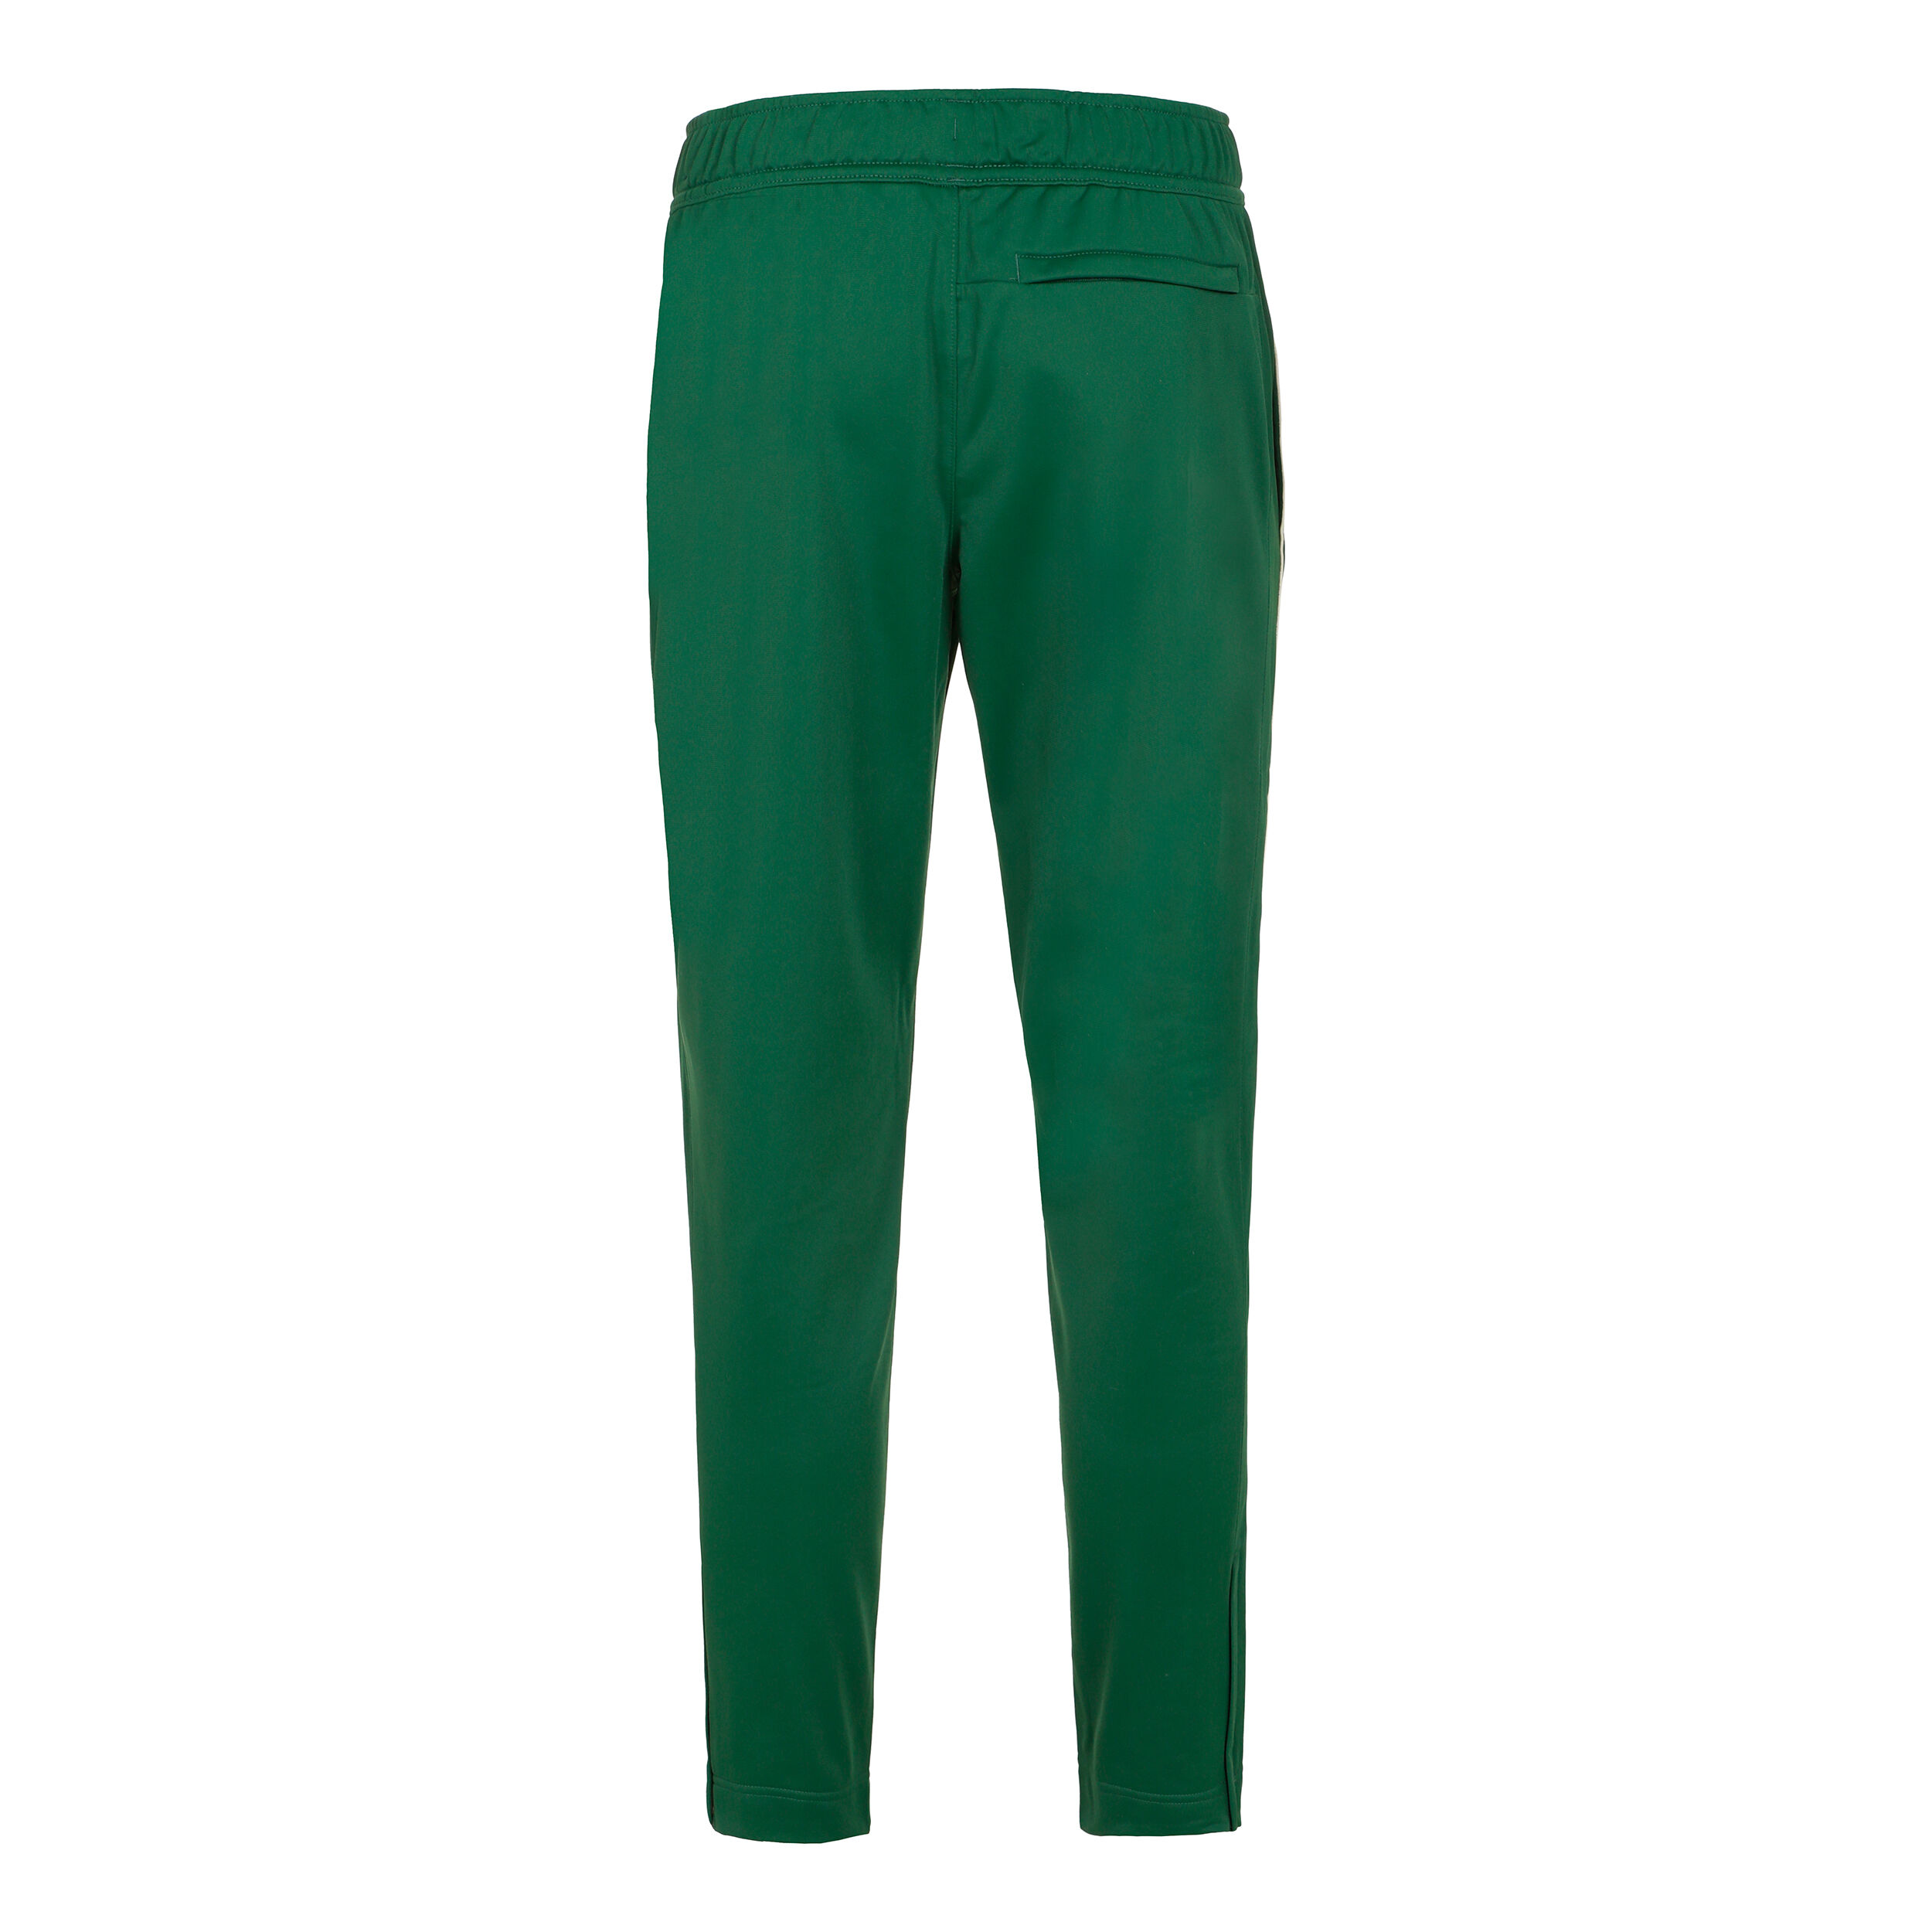 adidas Originals Track Pants Green Jogger Classic Trefoil Rare Men Size XL  | eBay